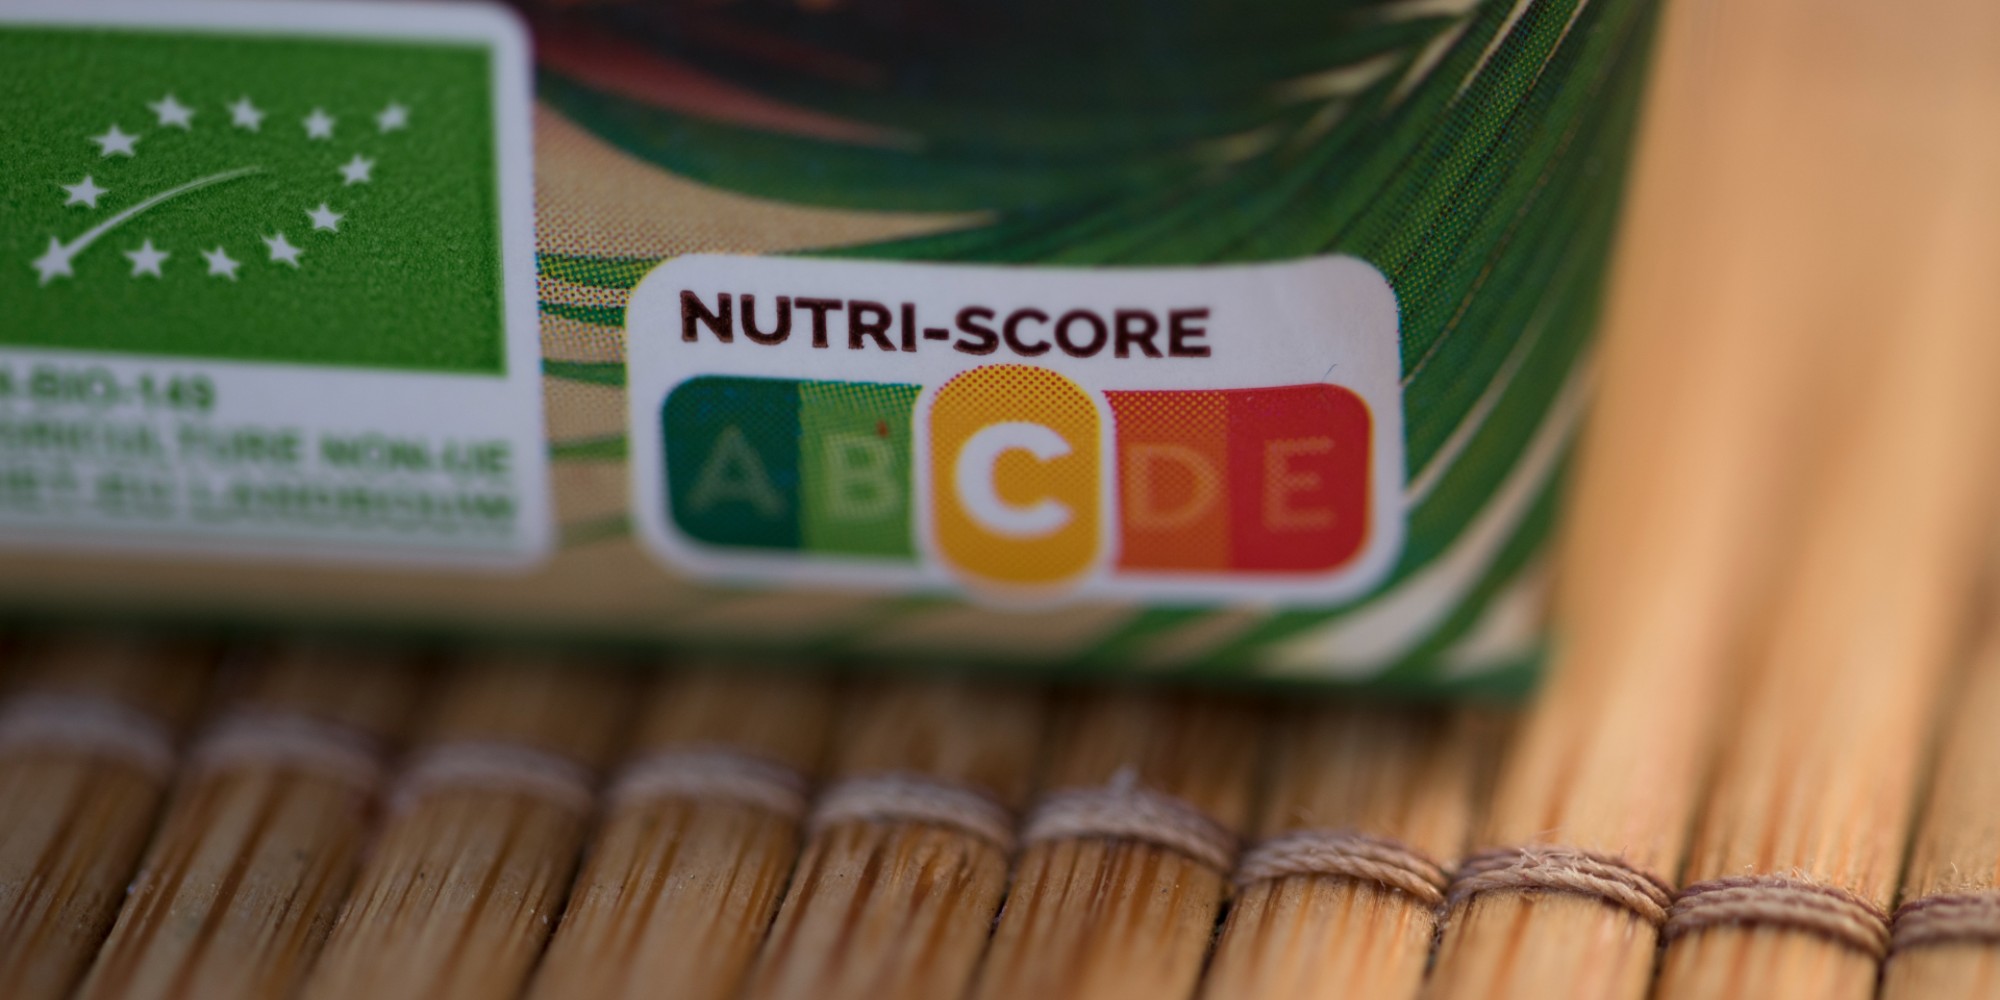 Le Nutri-Score favorise-t-il les aliments ultra-transformés?